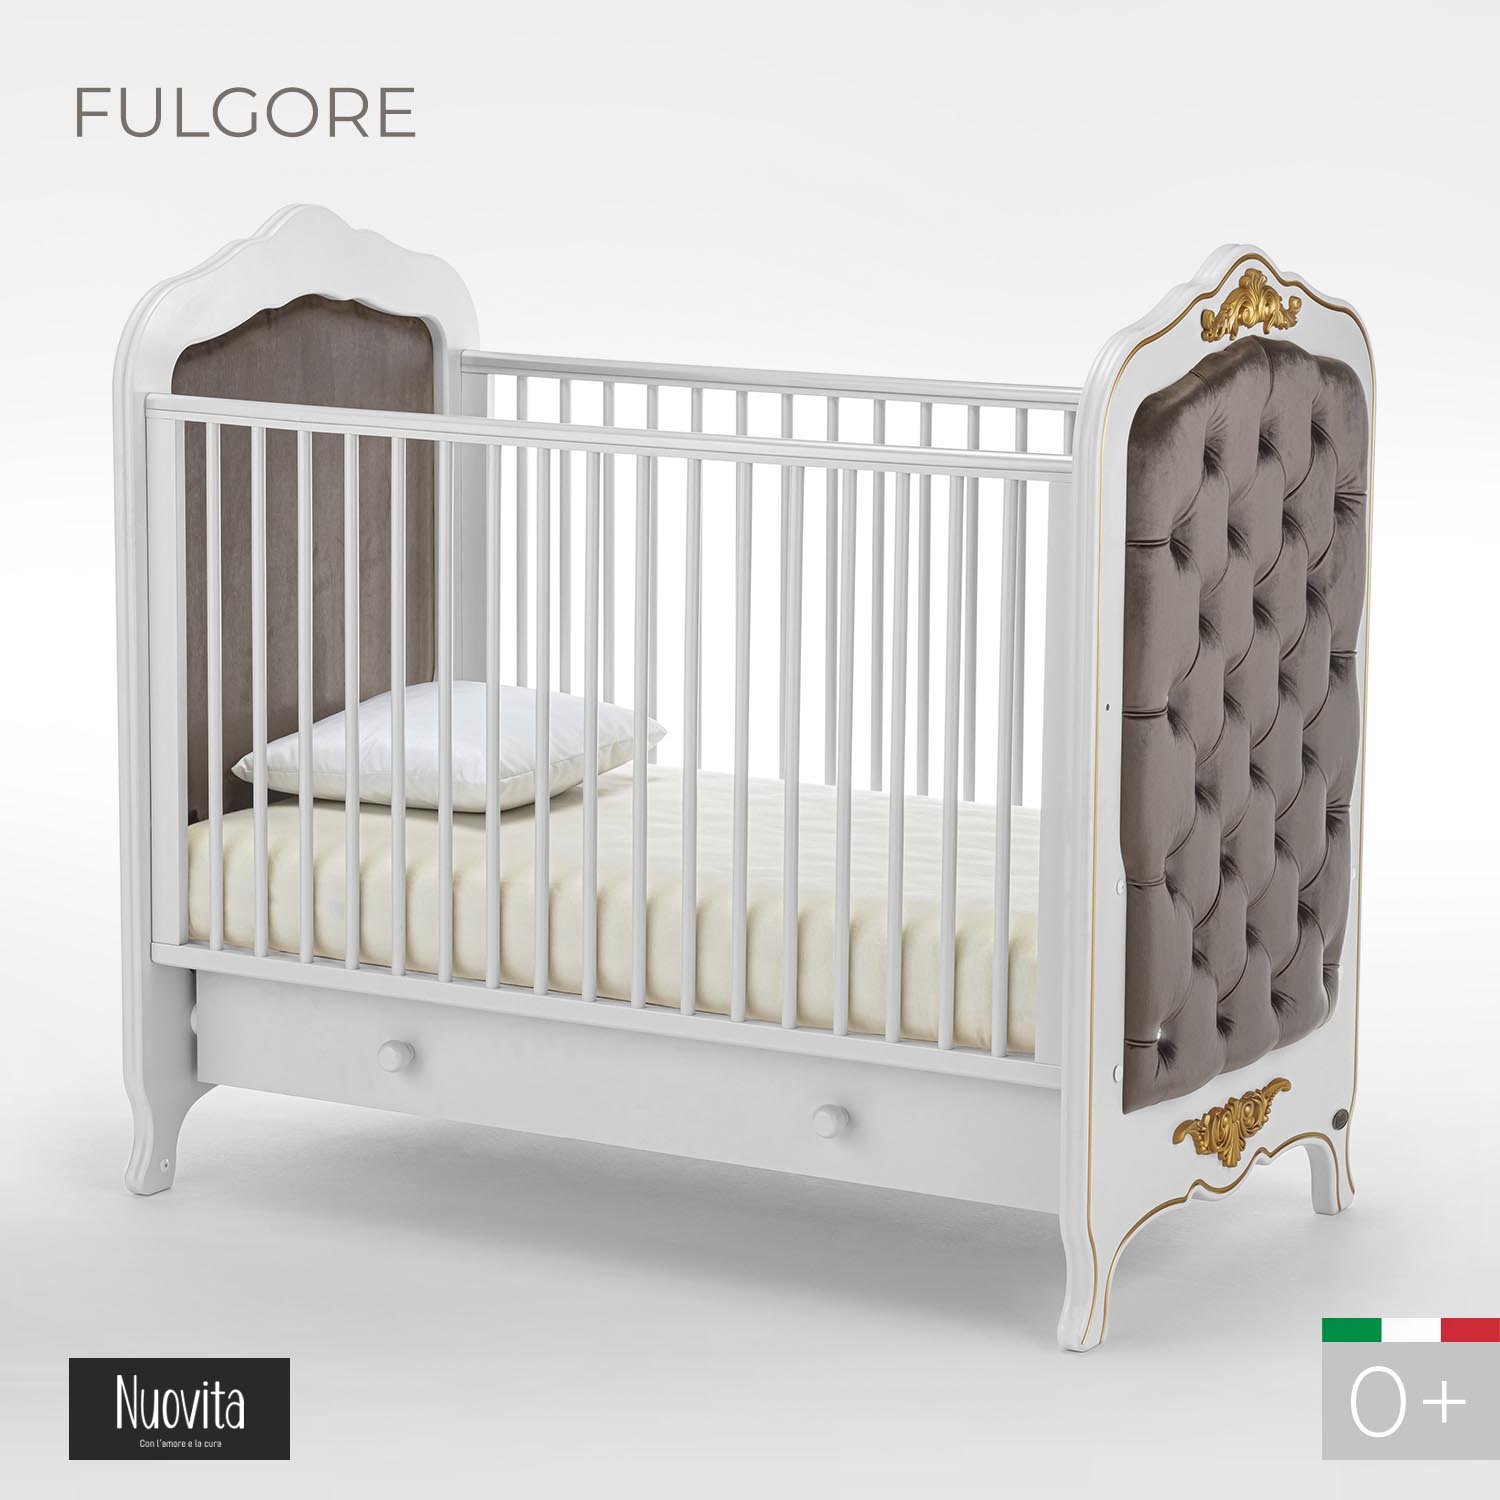 Детская кровать Nuovita Fulgore, белый